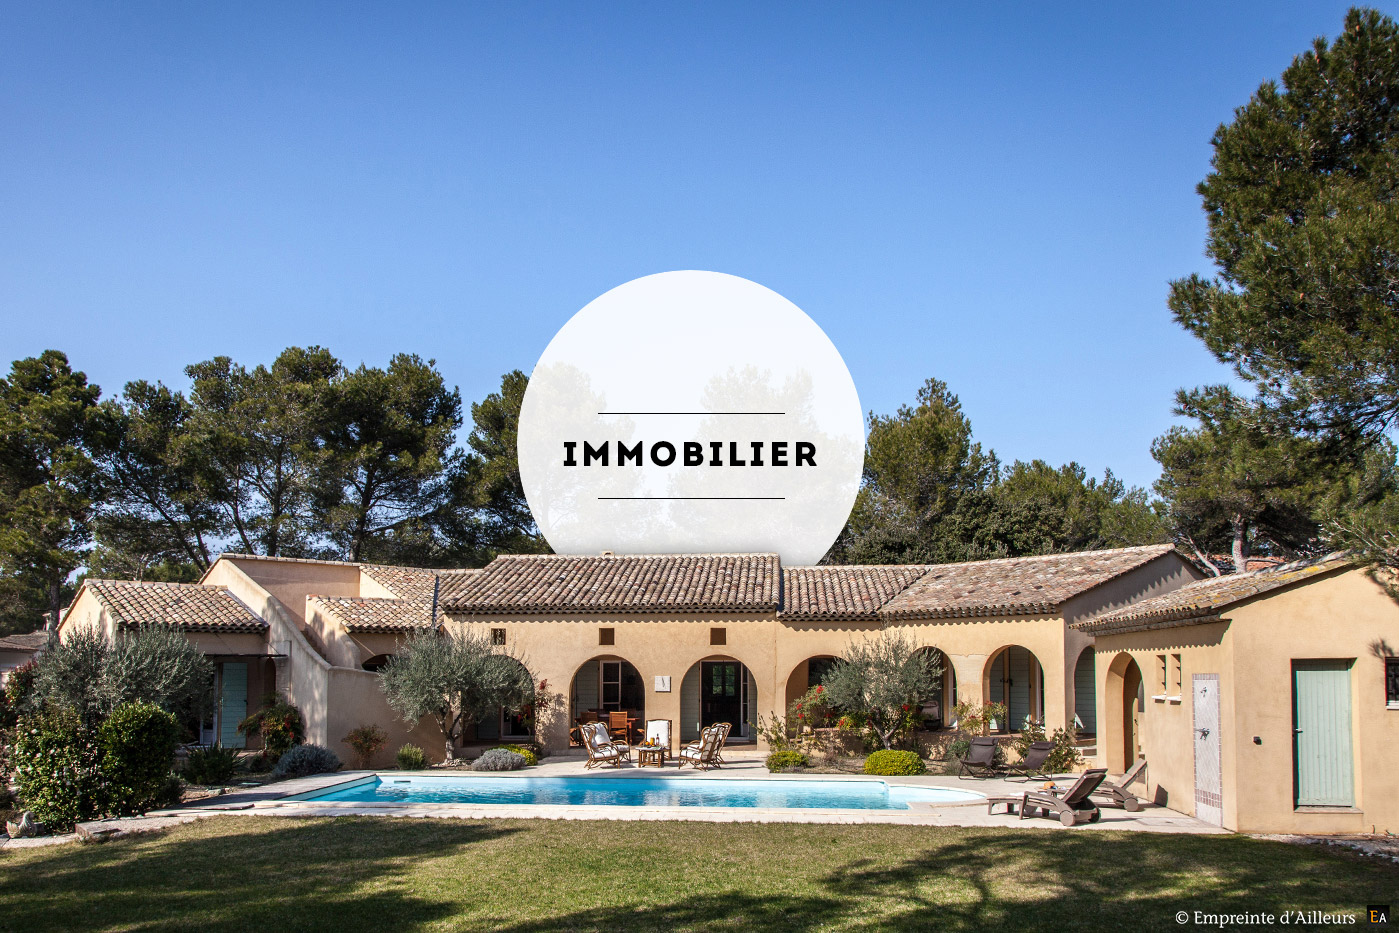 Photographe immobilier et maison en Provence